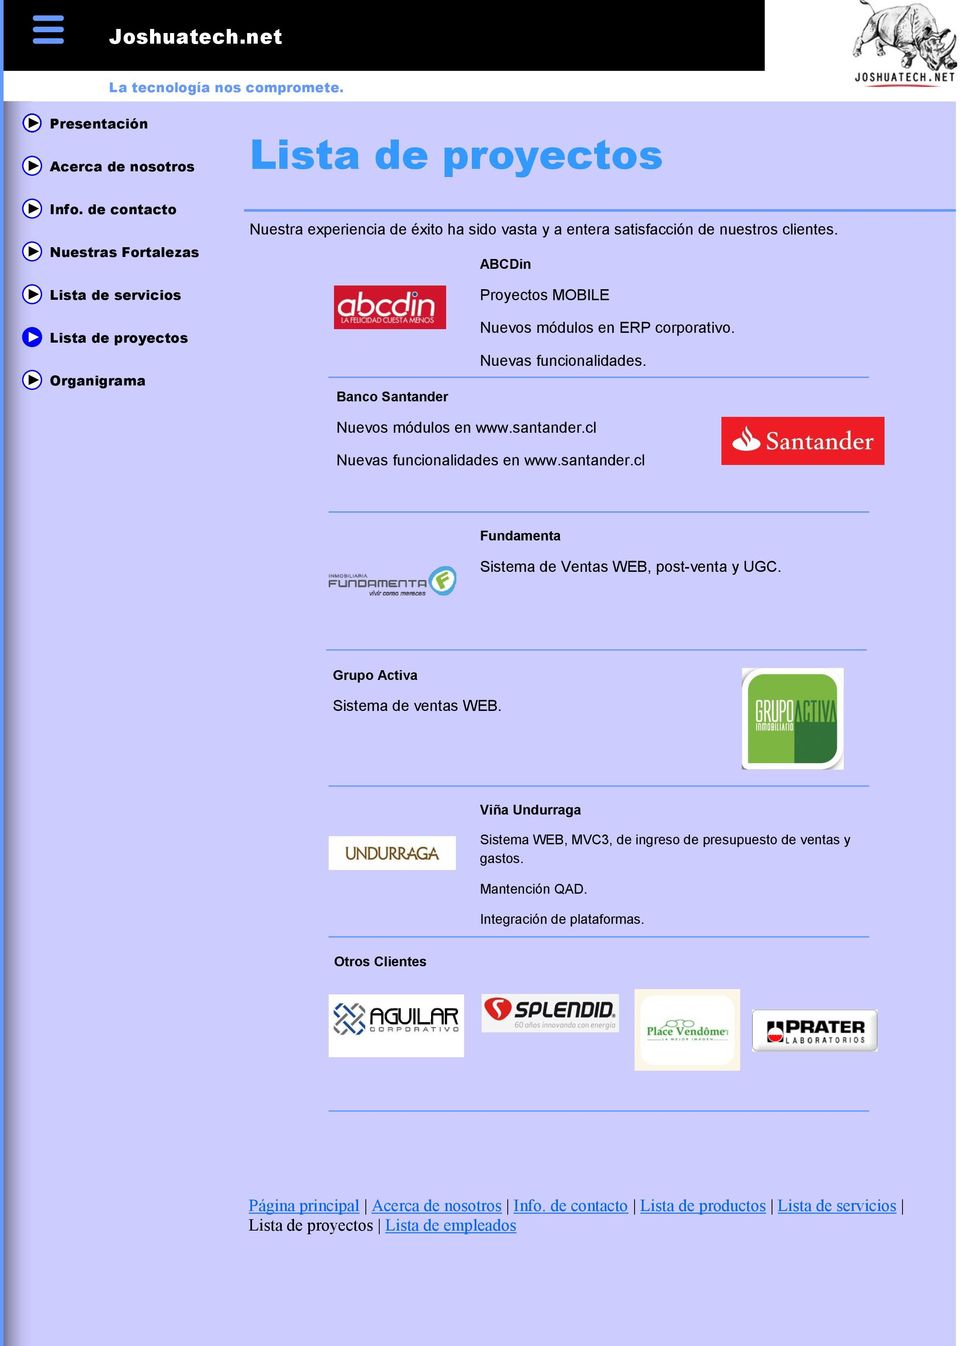 cl Nuevas funcionalidades en www.santander.cl Fundamenta Sistema de Ventas WEB, post-venta y UGC. Grupo Activa Sistema de ventas WEB.